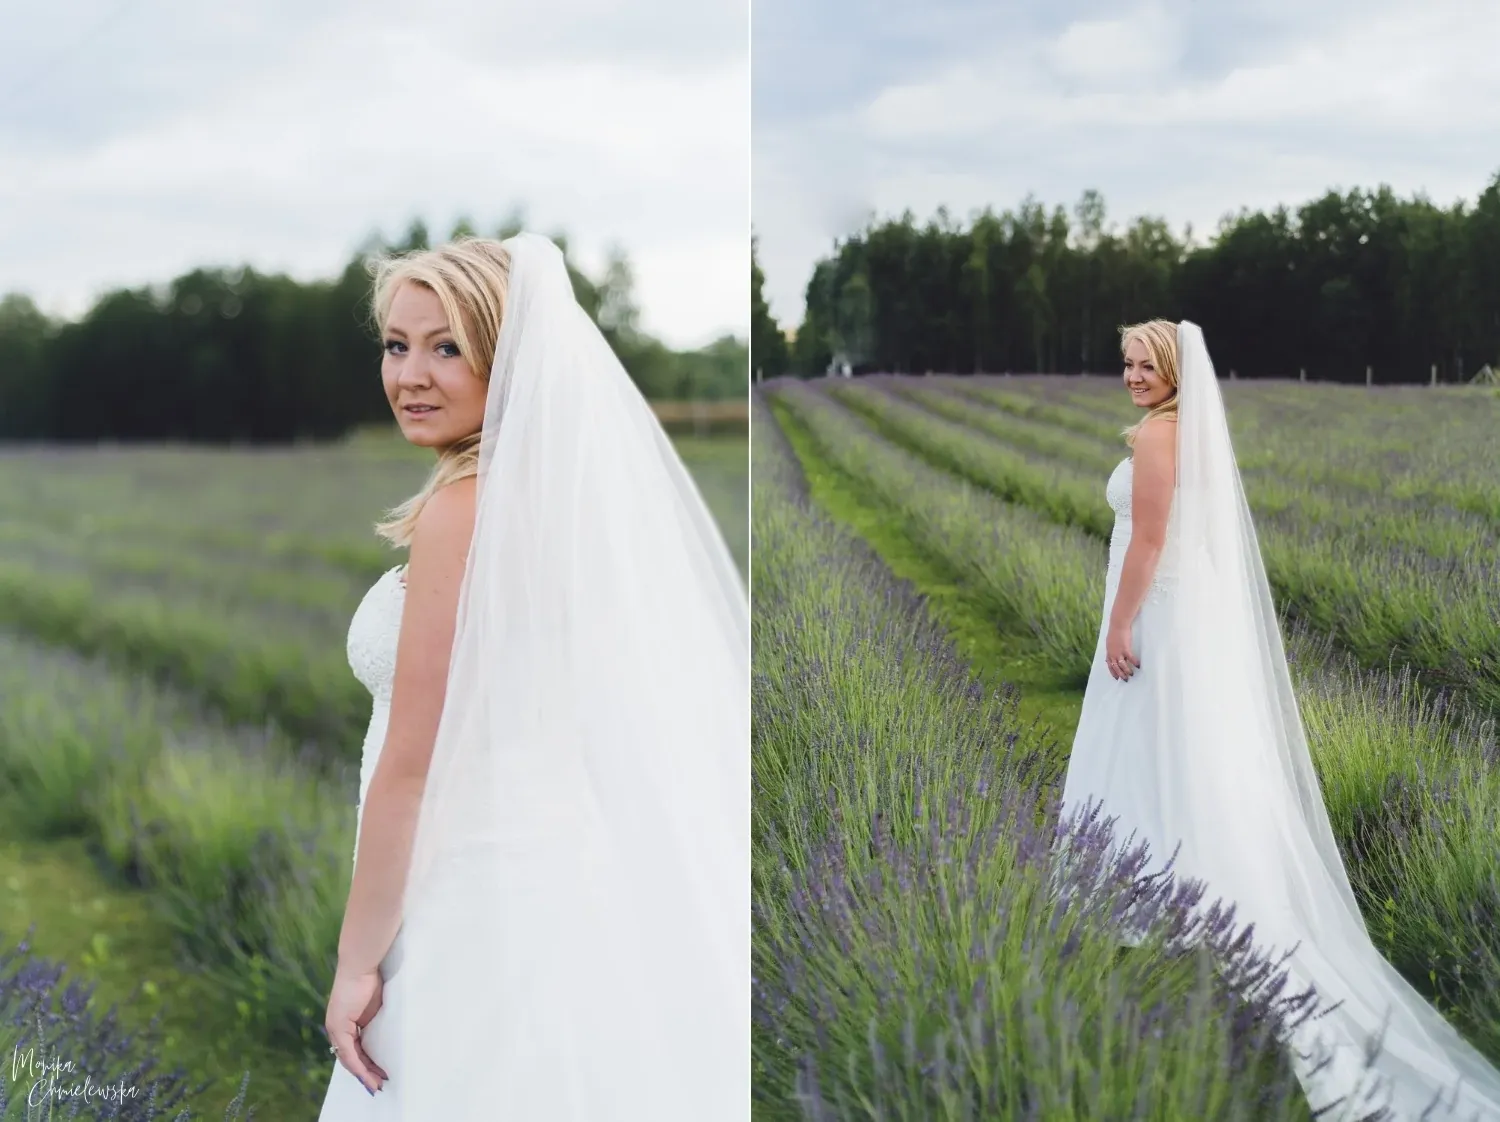 paulinamarcin_aftersession_12.webp - Paulina & Marcin- Monika Chmielewska - wedding, portaits, family photography - Munich